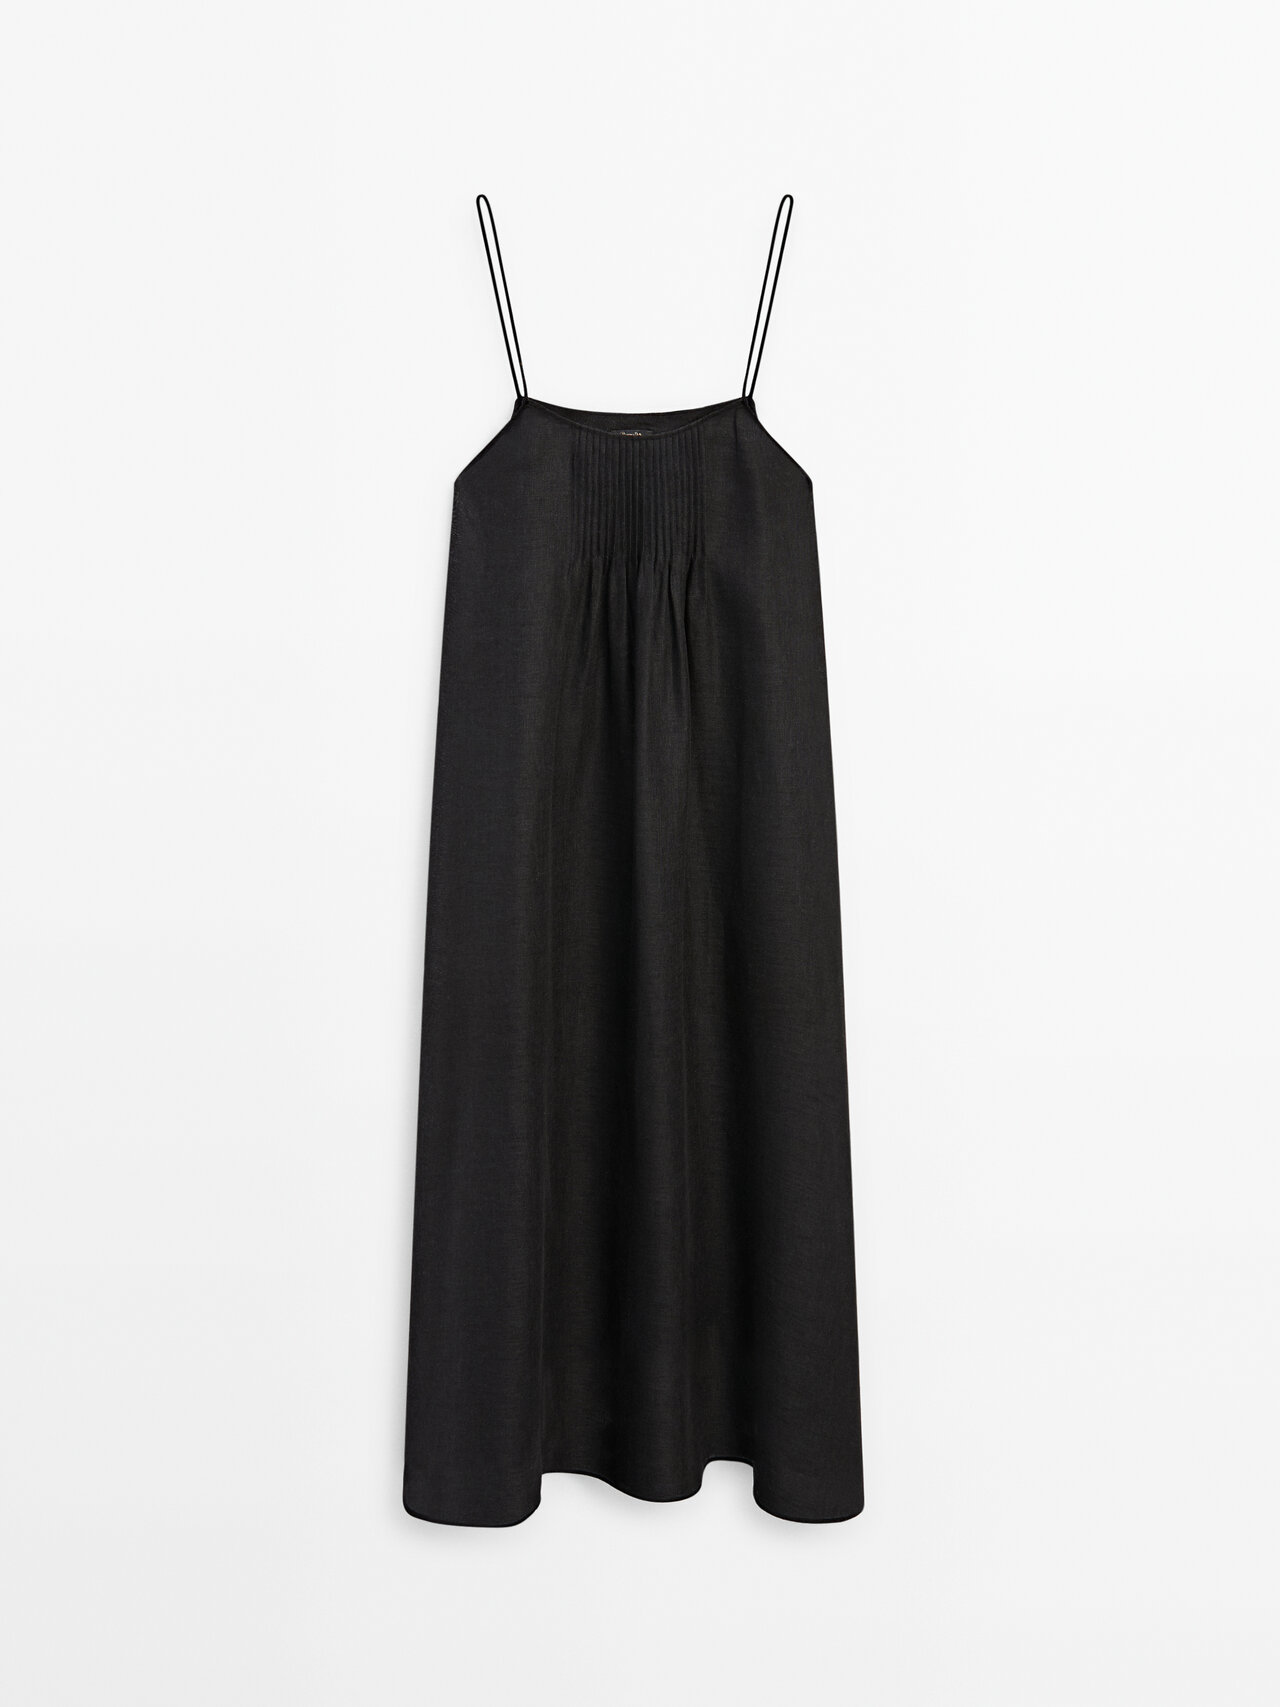 Massimo Dutti 100% Linen Strappy Dress In Black